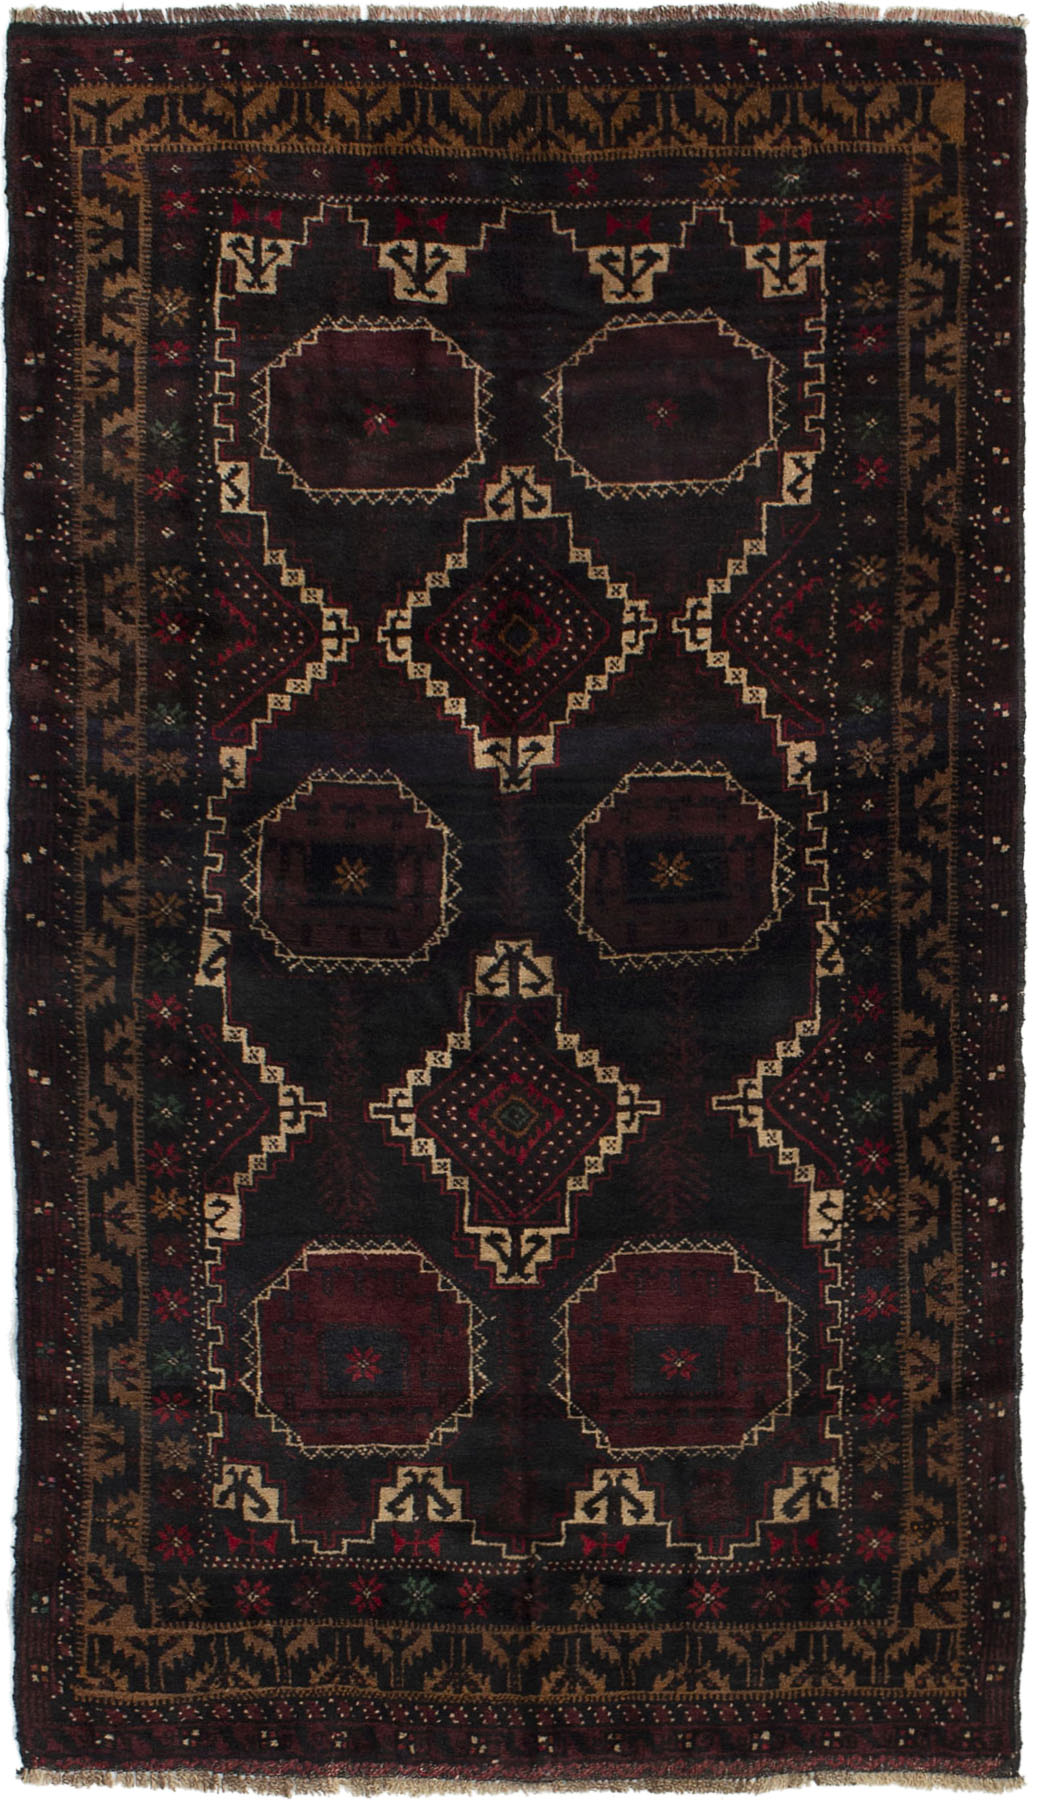 Hand-knotted Kazak Black, Dark Red Wool Rug 3'3" x 5'11" Size: 3'3" x 5'11"  